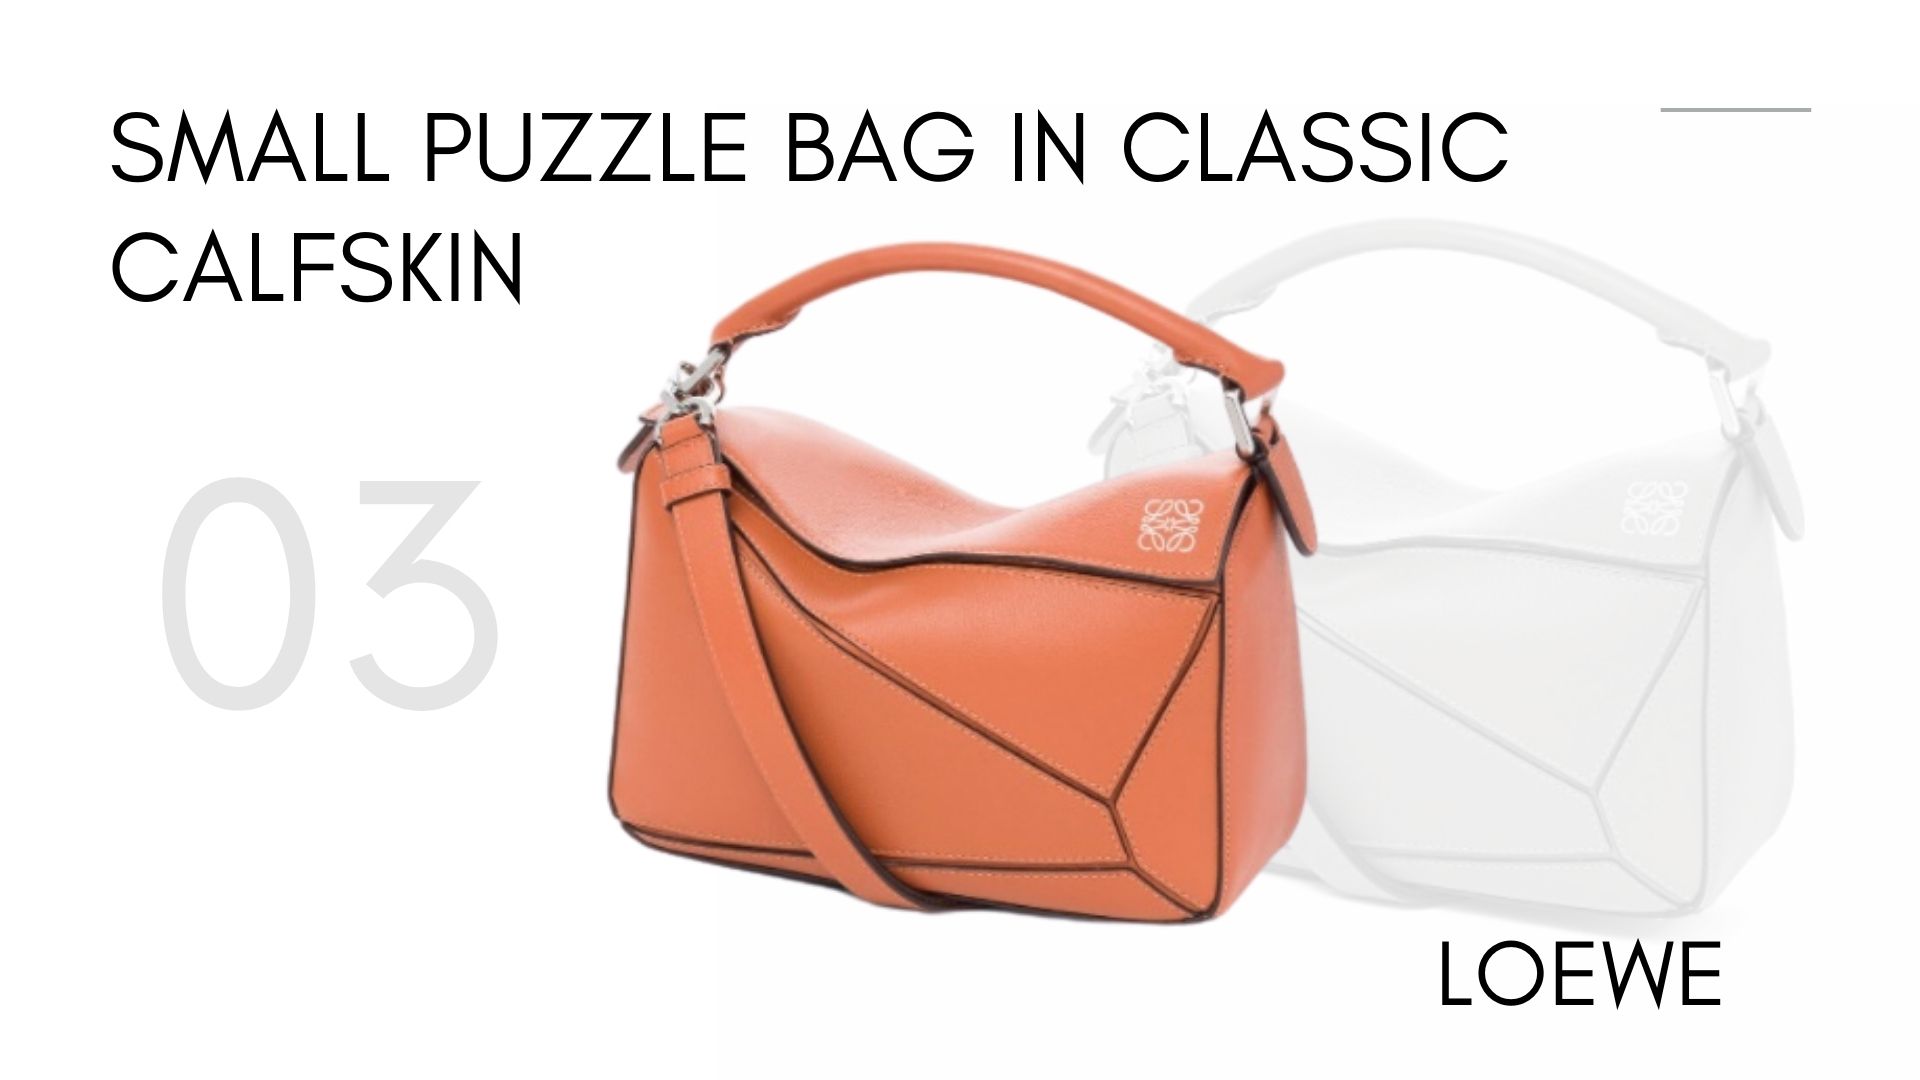 รวม 7 ITEM เด็ด Loewe Bag - Small Puzzle Bag In Classic Calfskin